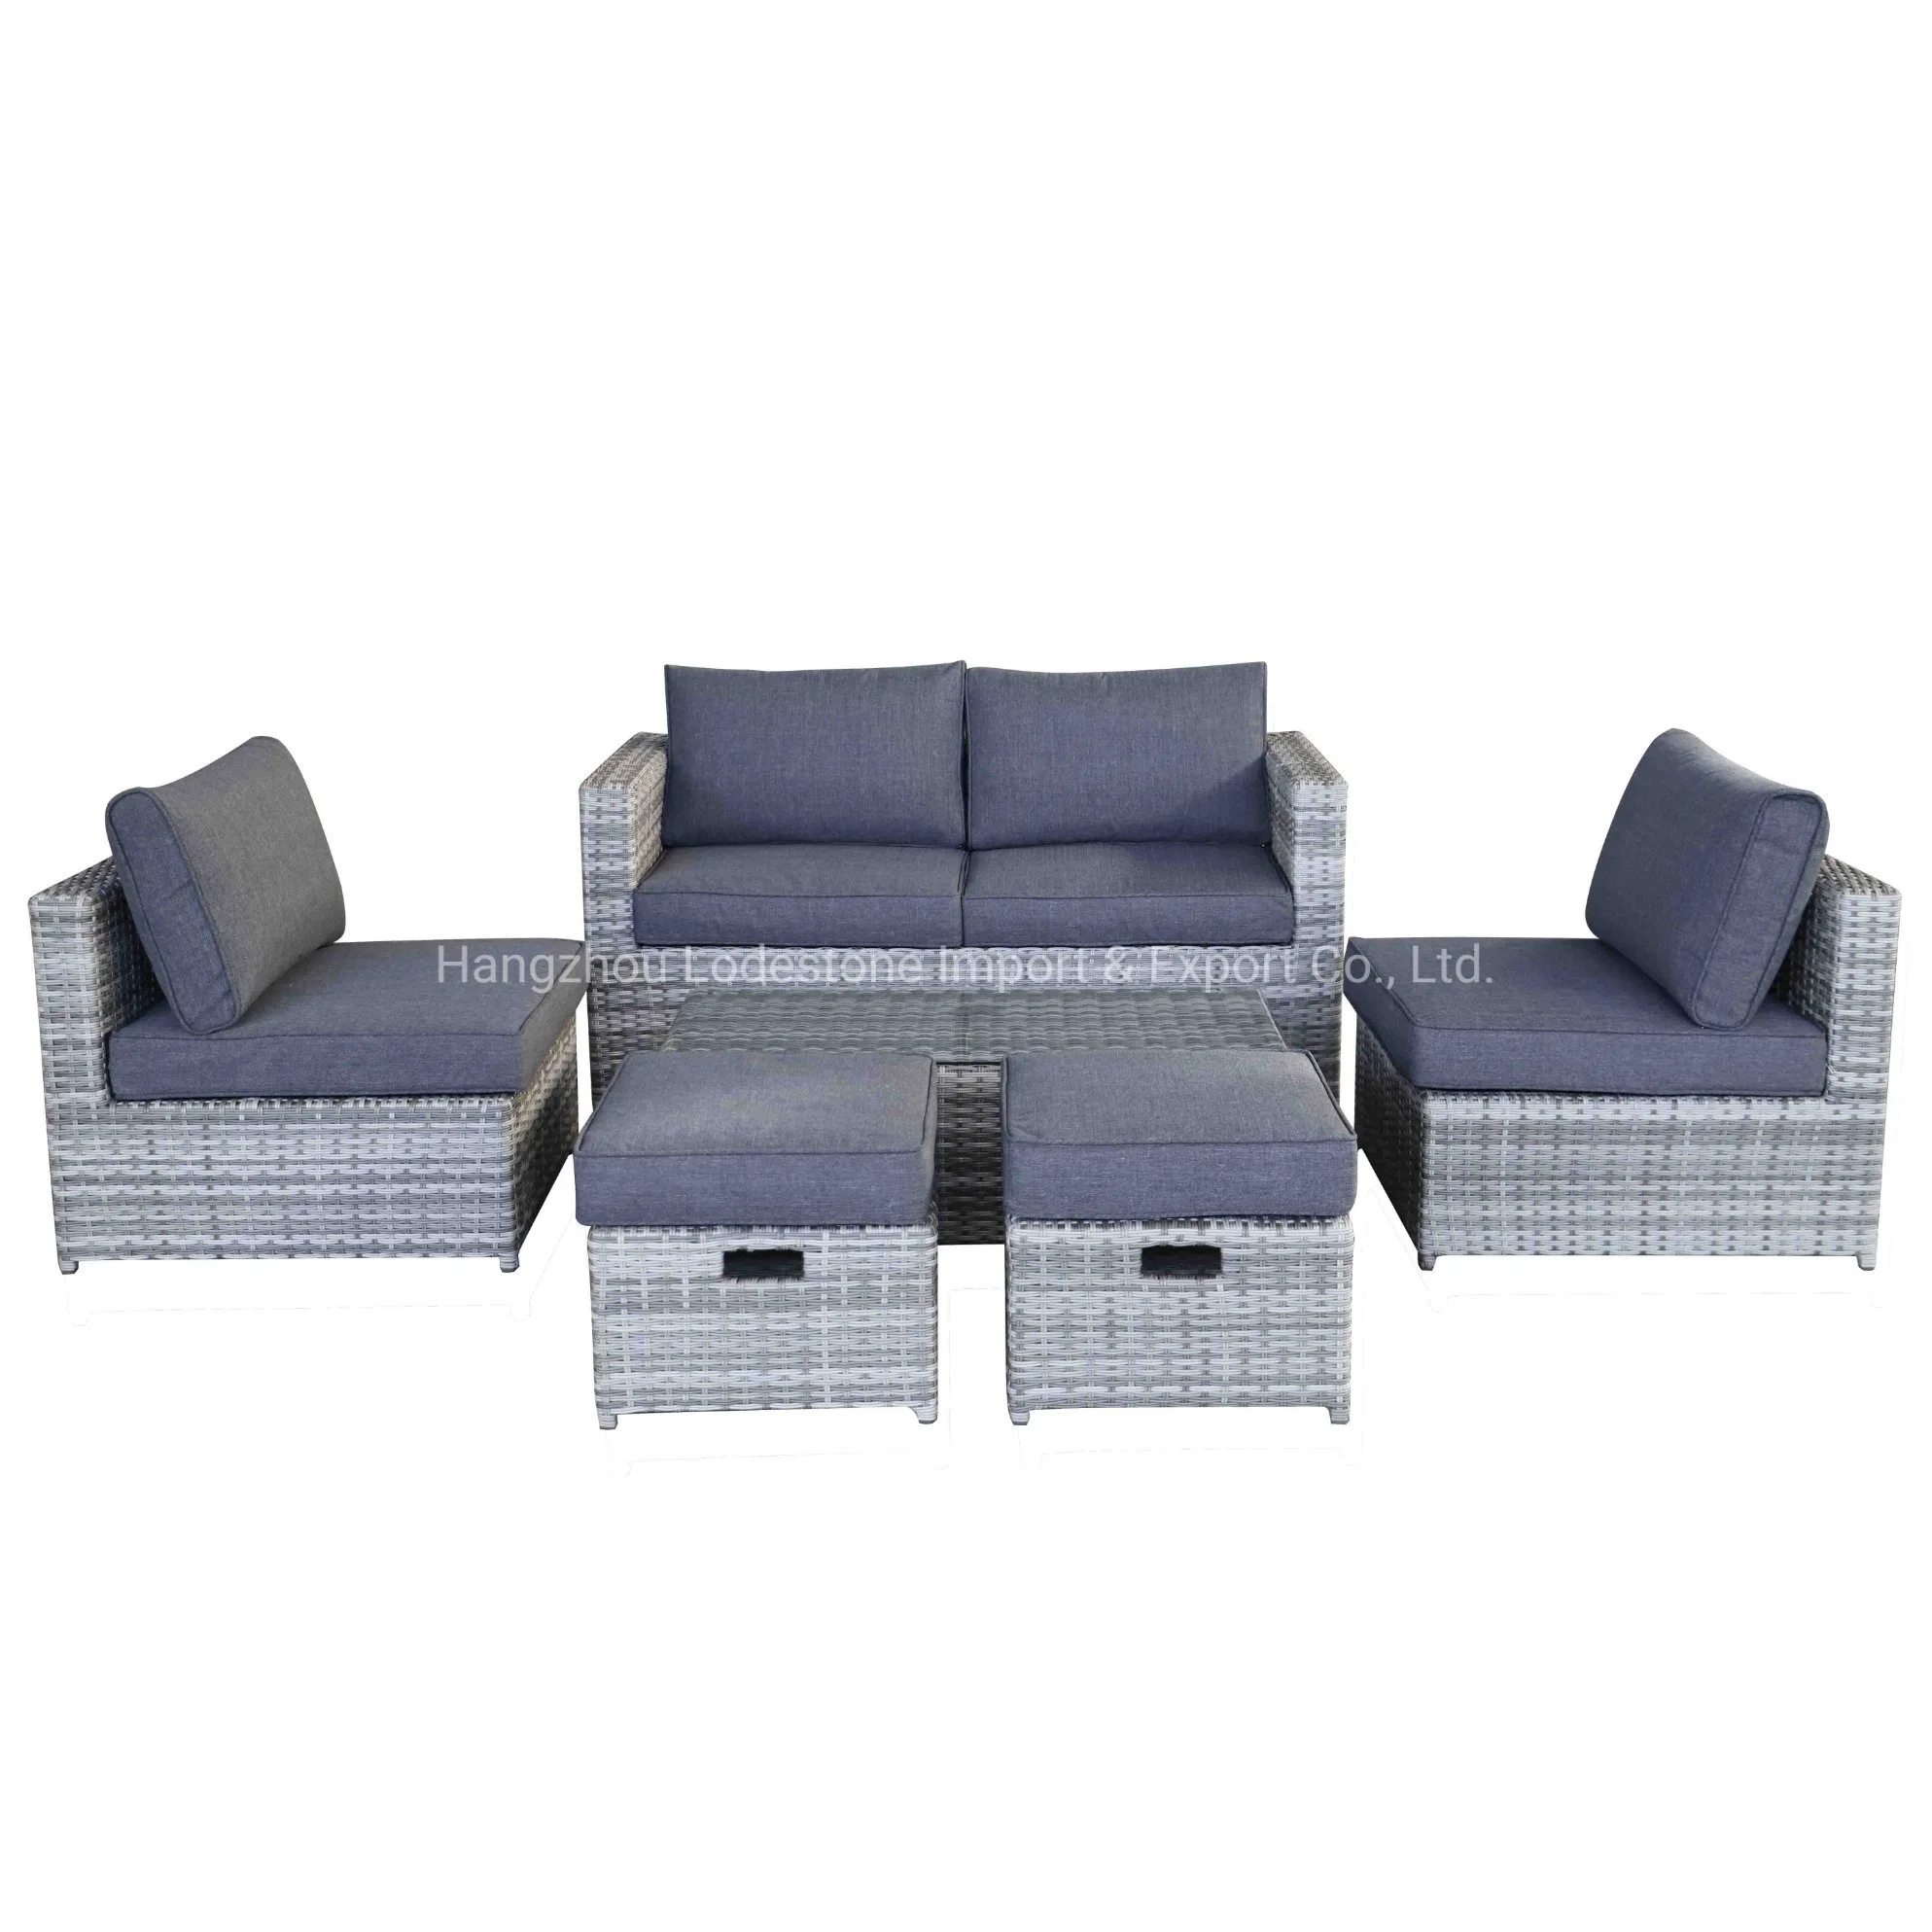 Todos los muebles de exterior de sofá seccional de mimbre de ratán de aluminio resistente a todas las condiciones climáticas